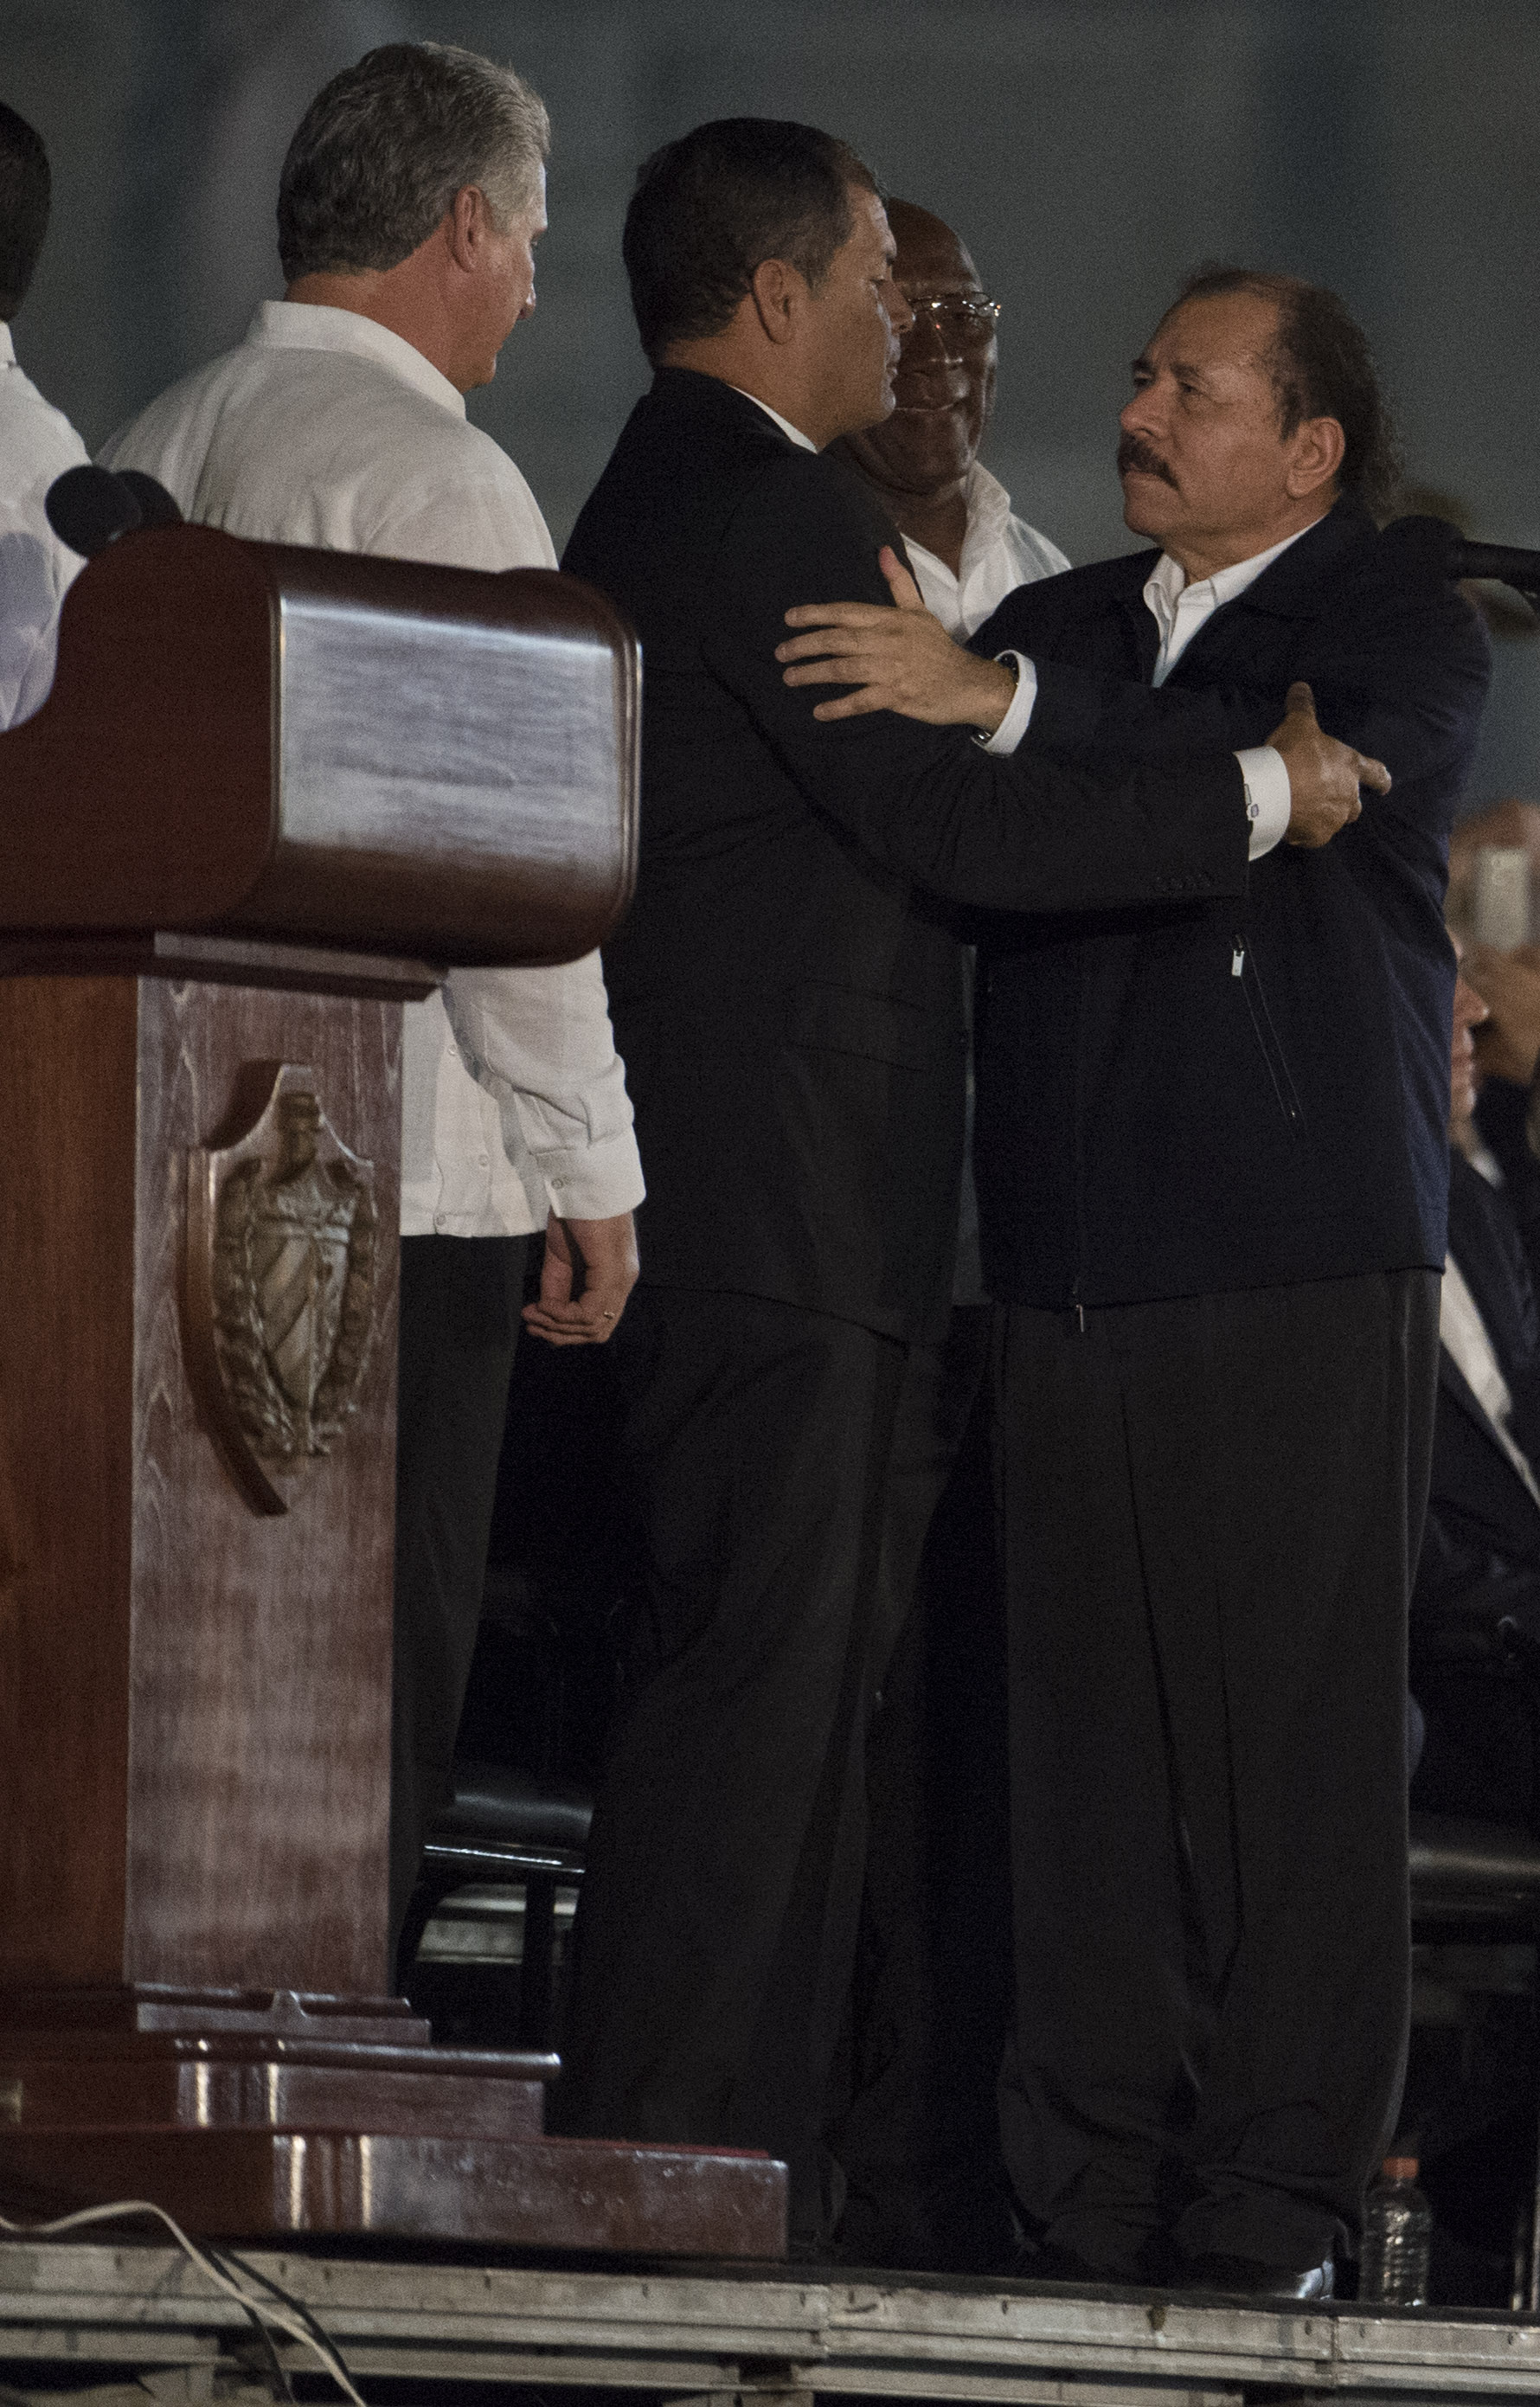 خوسيه دانييل أورتيغا سافيردة هو رئيس نيكاراغوا